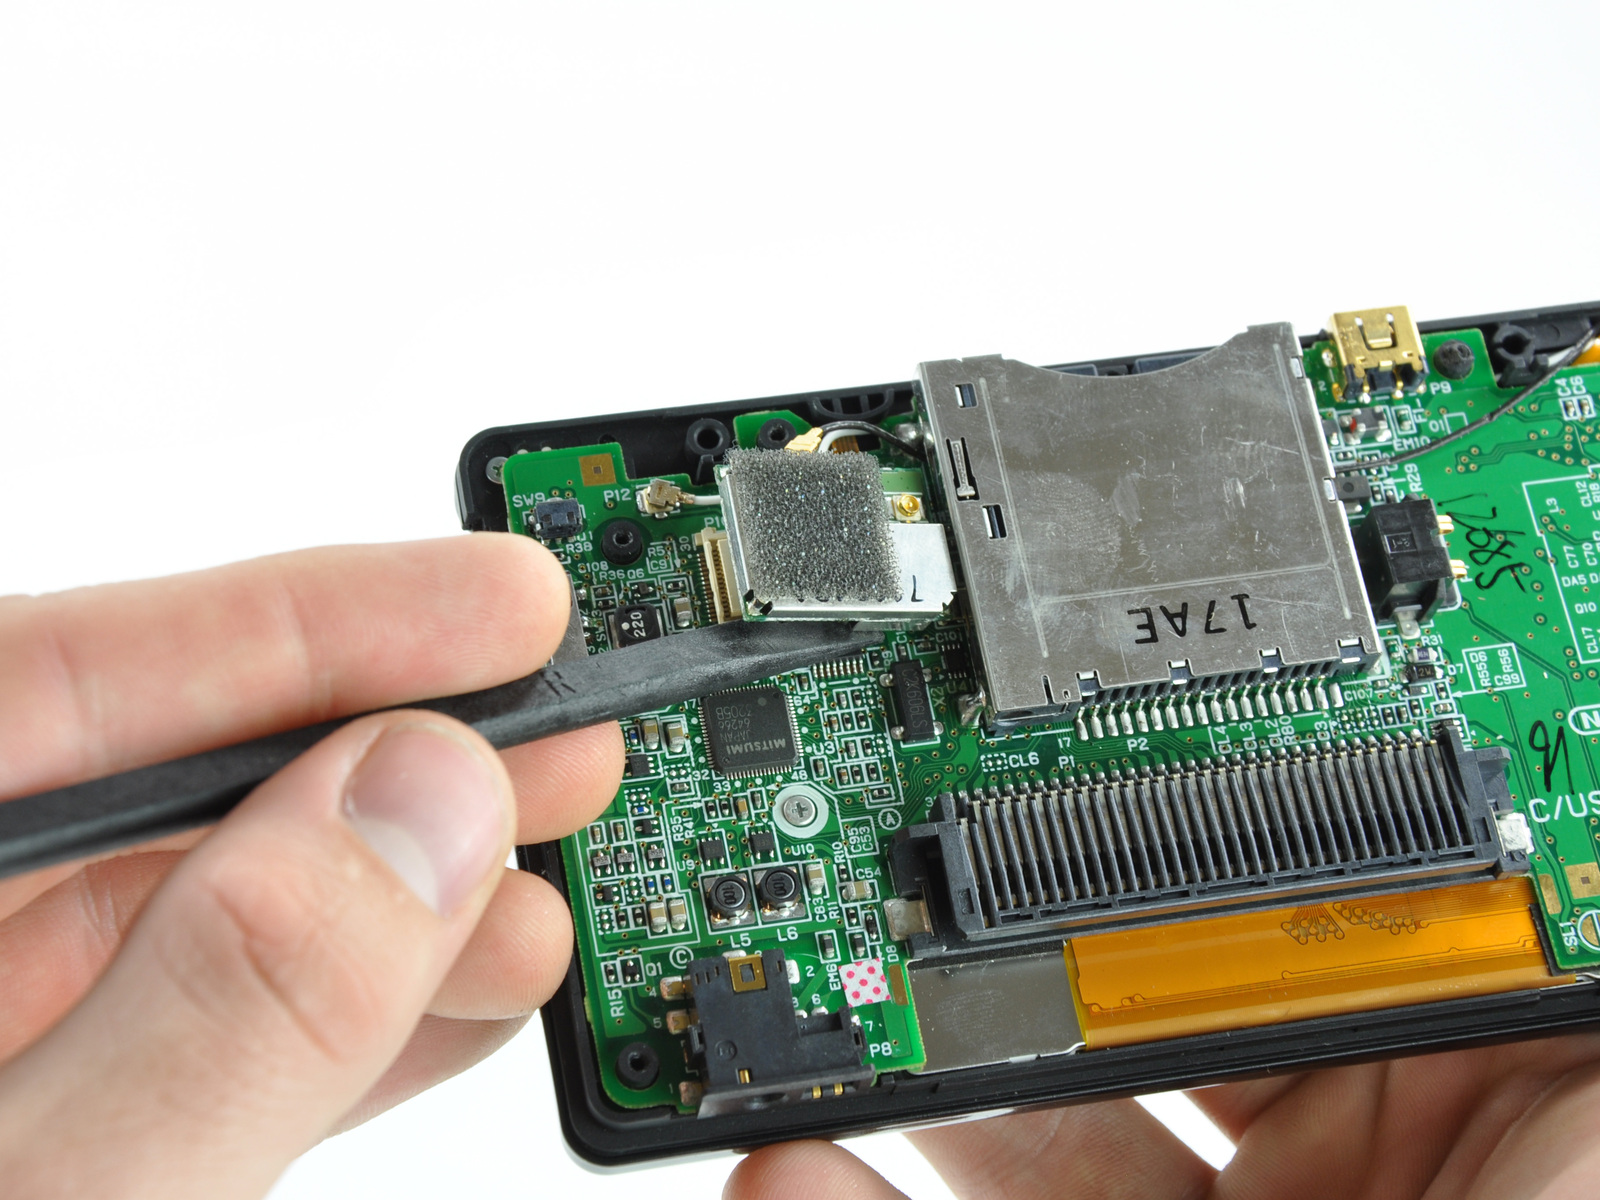 şarj olmuyor Nintendo DS Tamir Adım 9 yukarı doğru anakart üzerindeki yuvasından Wi-Fi kurulu konektörü gözetlemek için bir spudger düz kenarını kullanın.